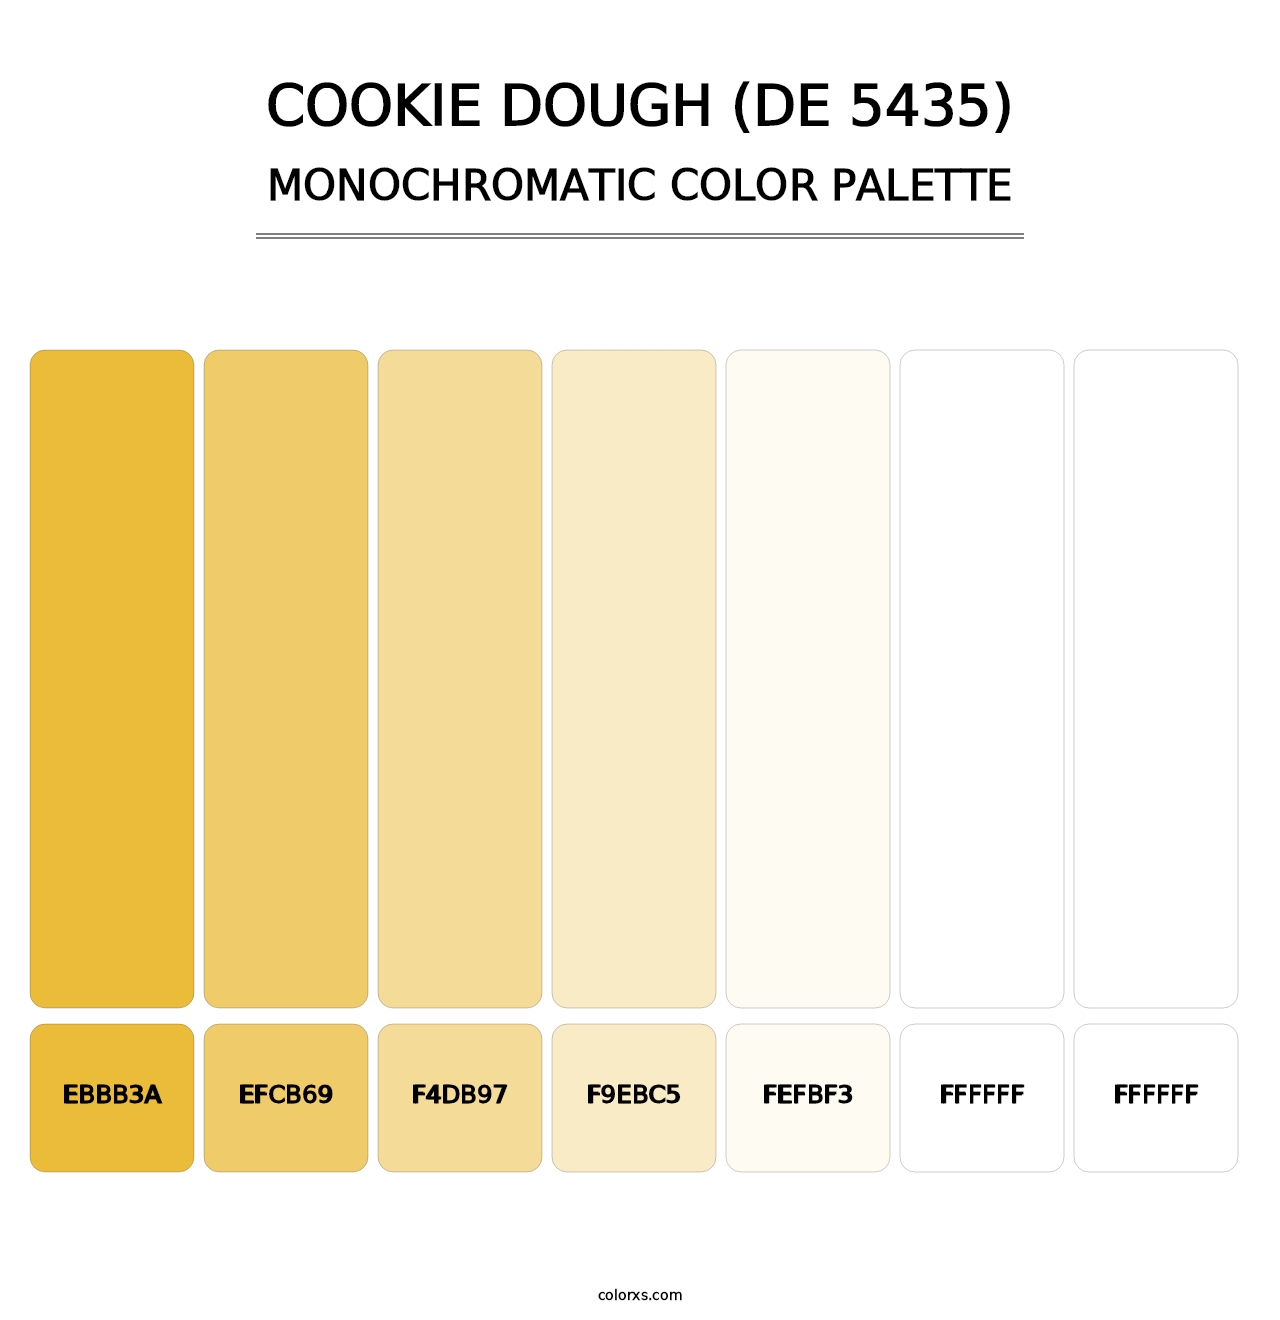 Cookie Dough (DE 5435) - Monochromatic Color Palette